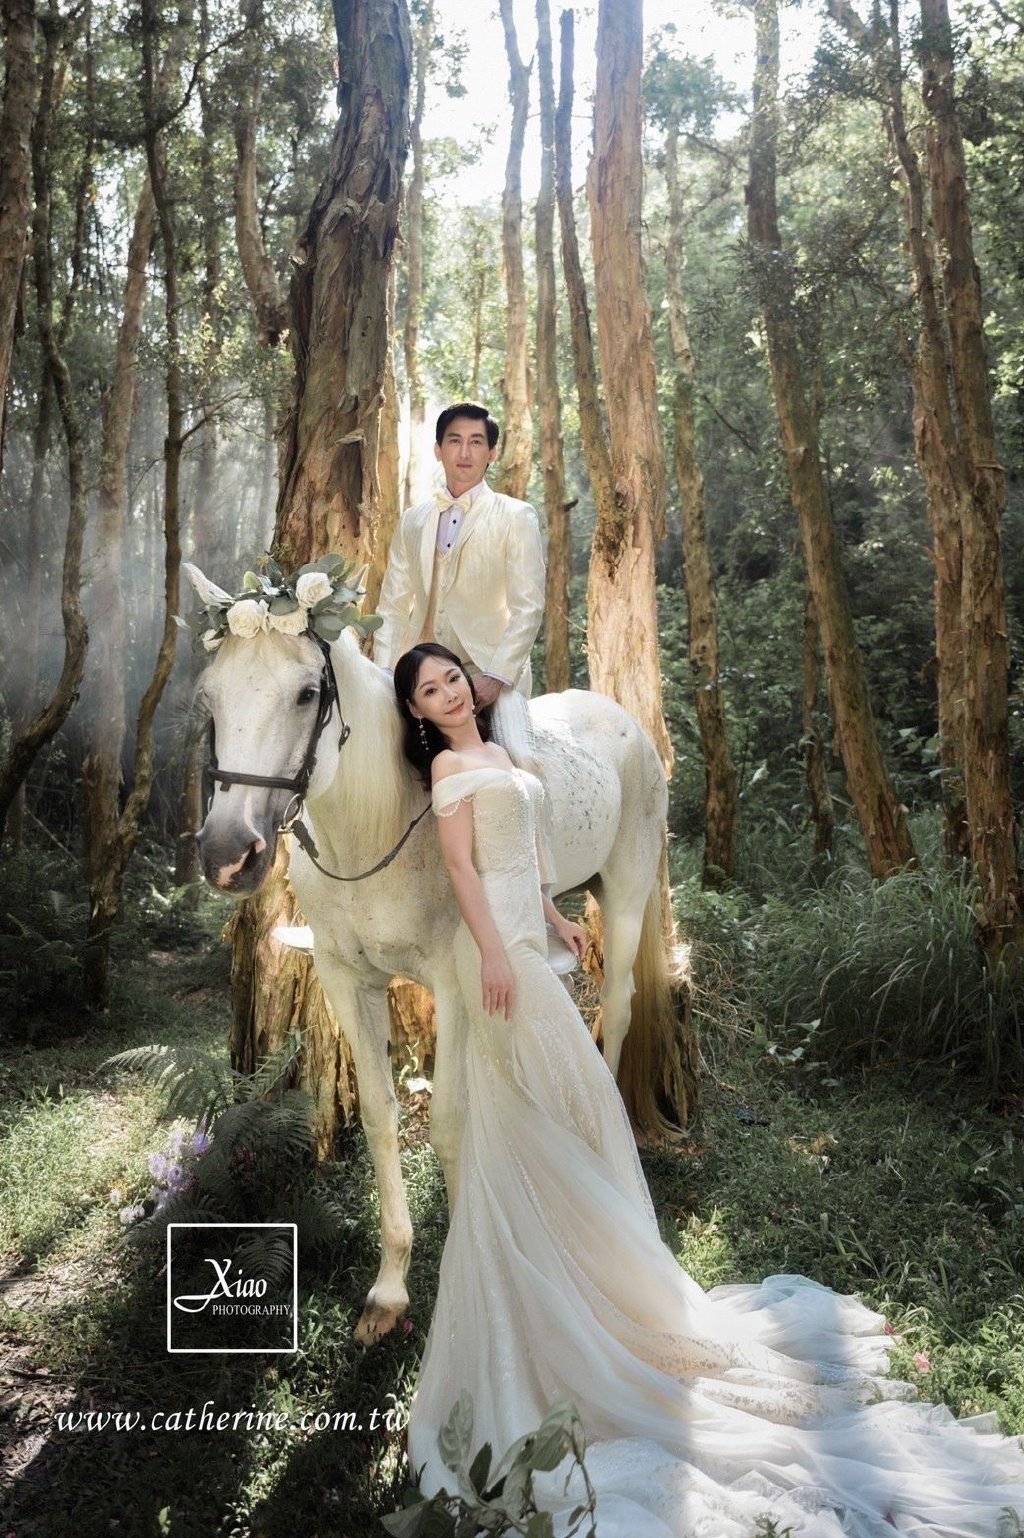 资深女星王俐人分享婚纱照,新郎骑在马上,新娘在下面牵马